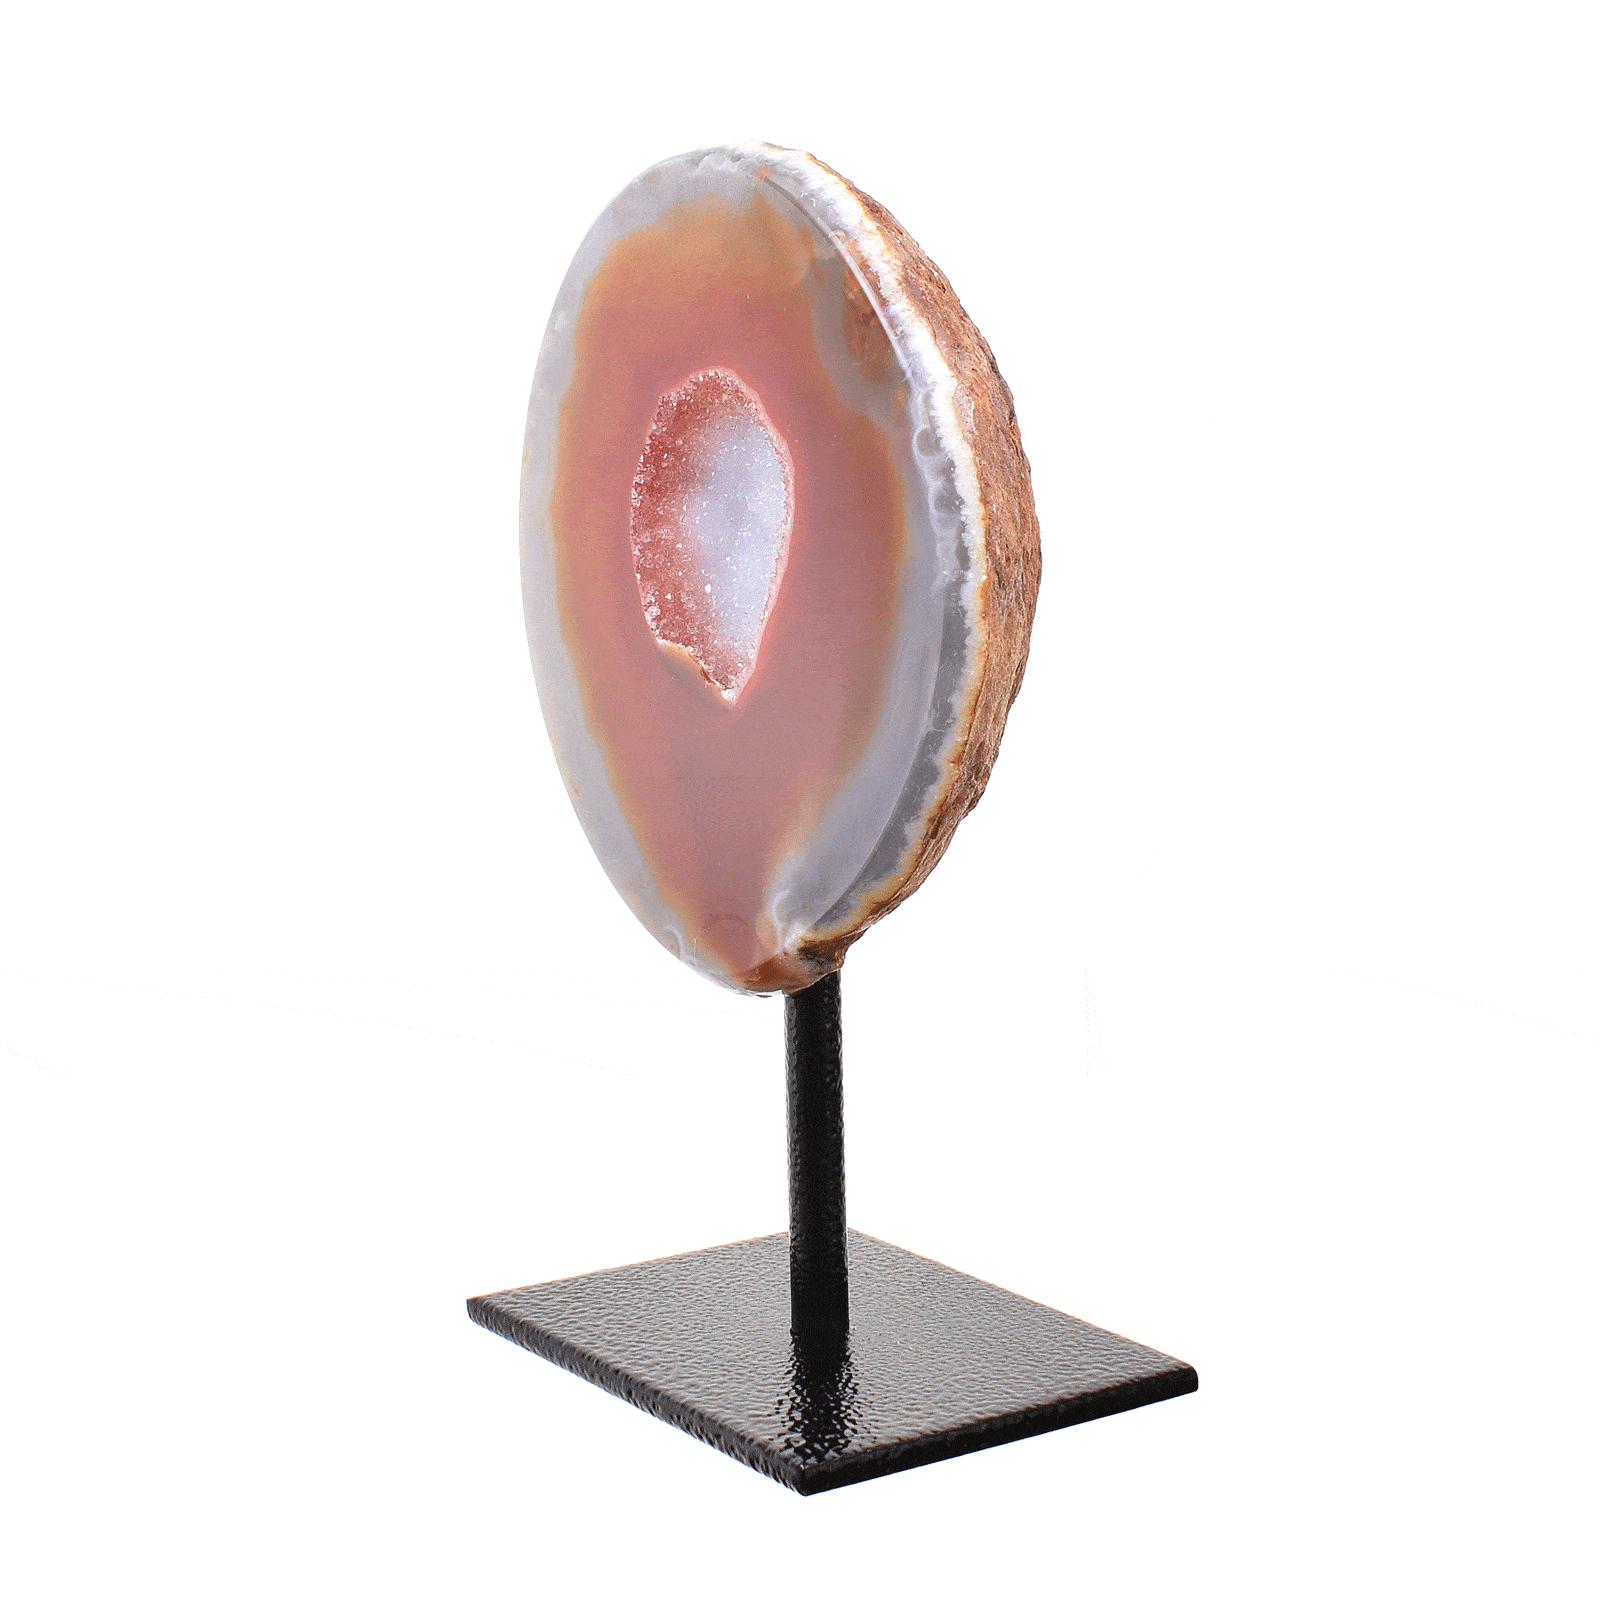 Γεώδες φυσικής πέτρας Αχάτη με Κρύσταλλα Χαλαζία στο εσωτερικό του. Ο Αχάτης είναι ενσωματωμένος σε μαύρη μεταλλική βάση και το μέγιστο ύψος είναι 13,5cm. Αγοράστε online shop.